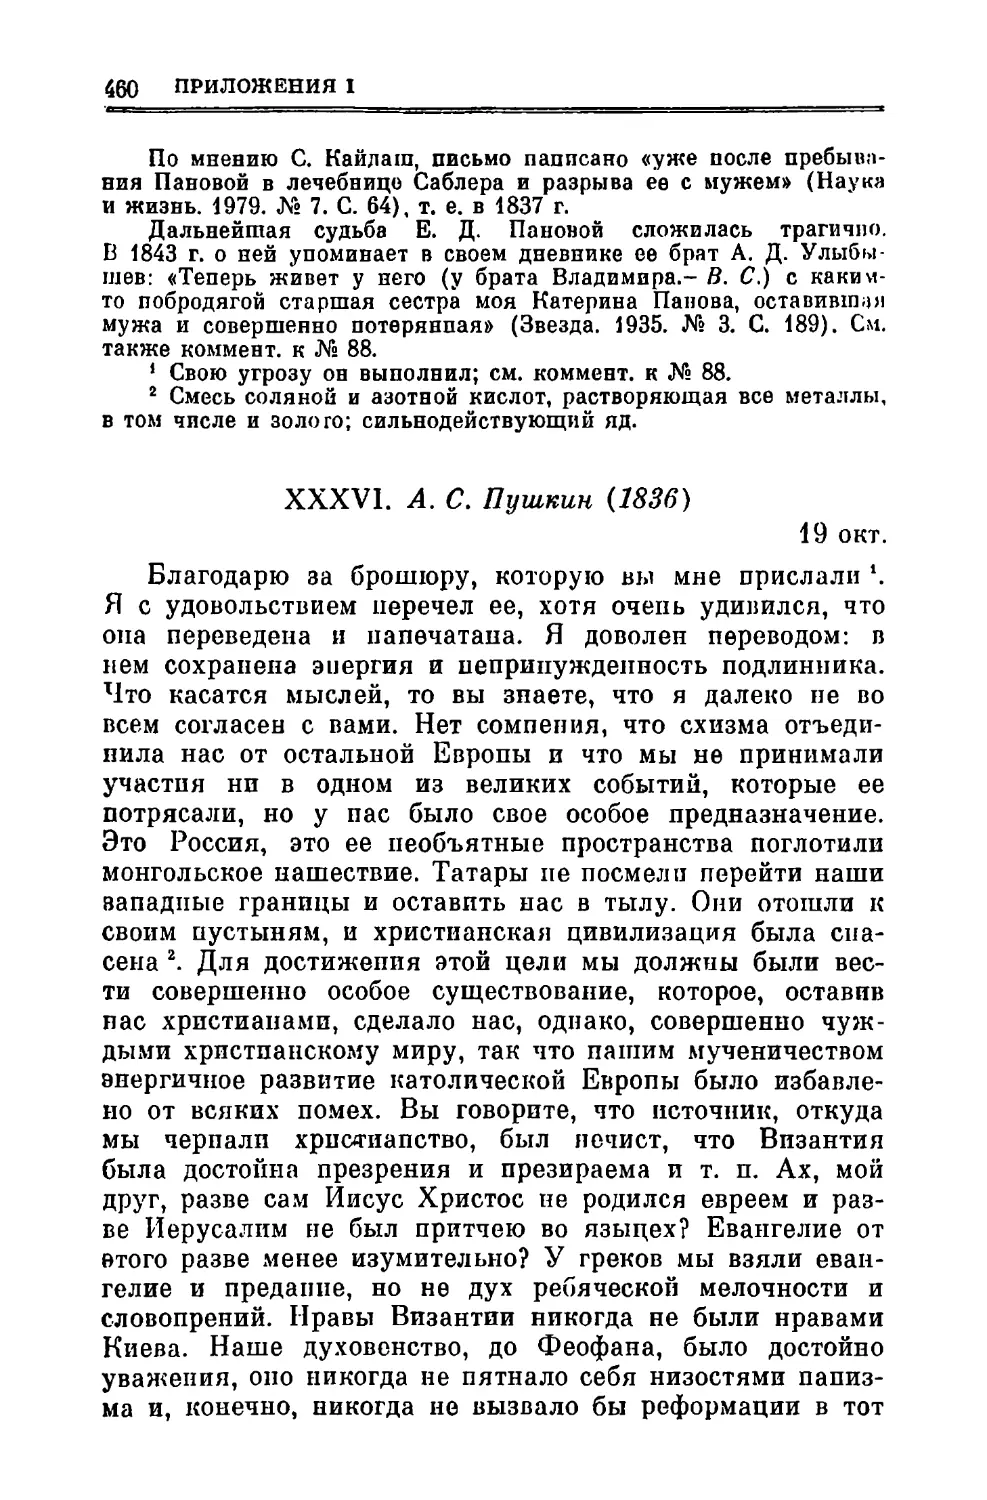 XXXVI. Пушкин A.C. 19.Х.1836